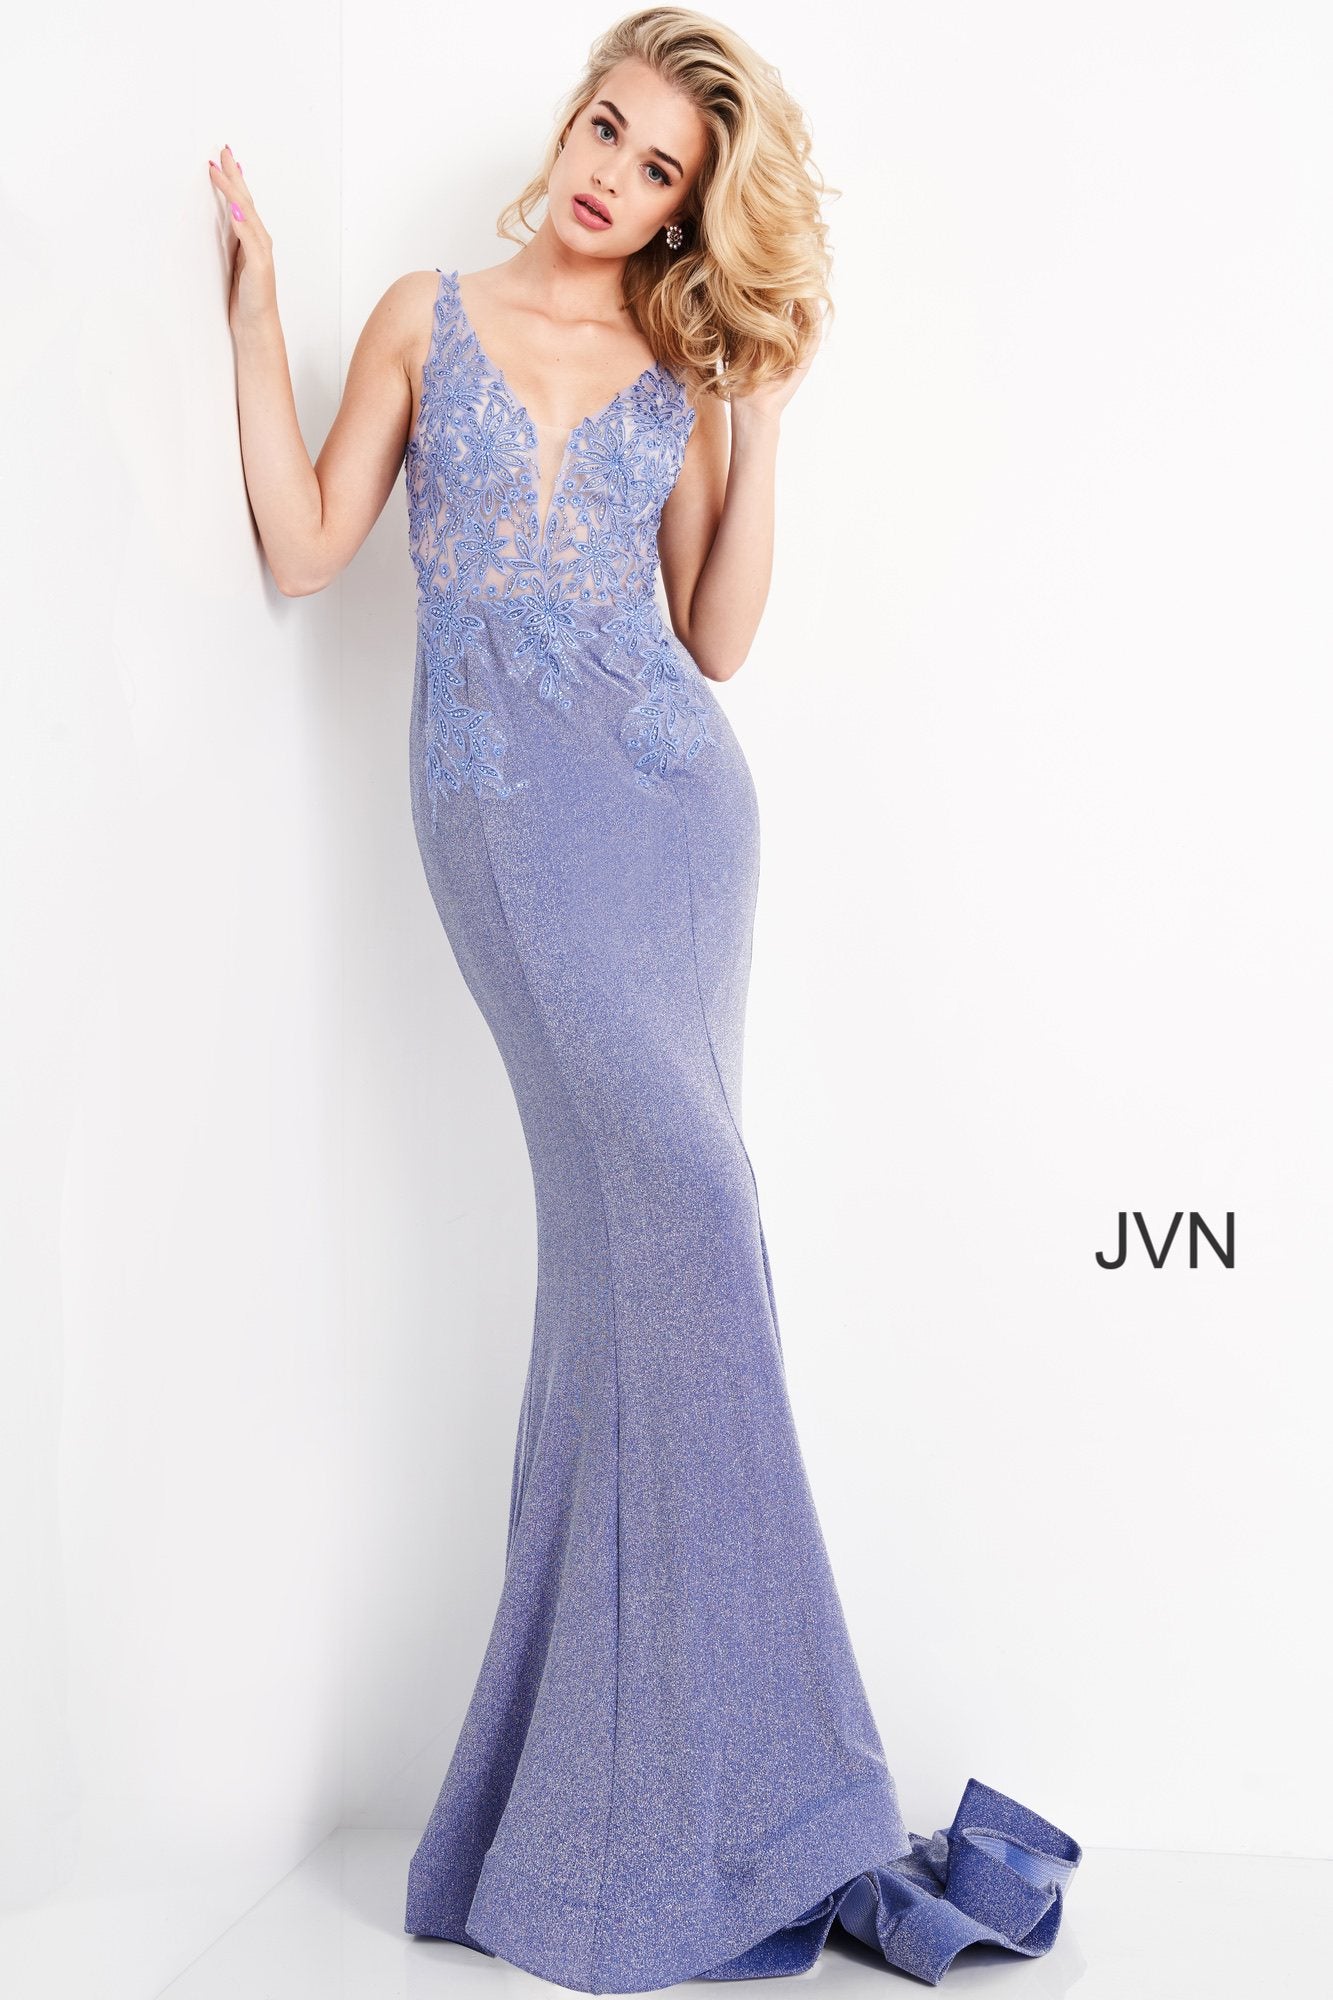 Floral Bodice Sheath Prom Dress By Jovani -JVN06505